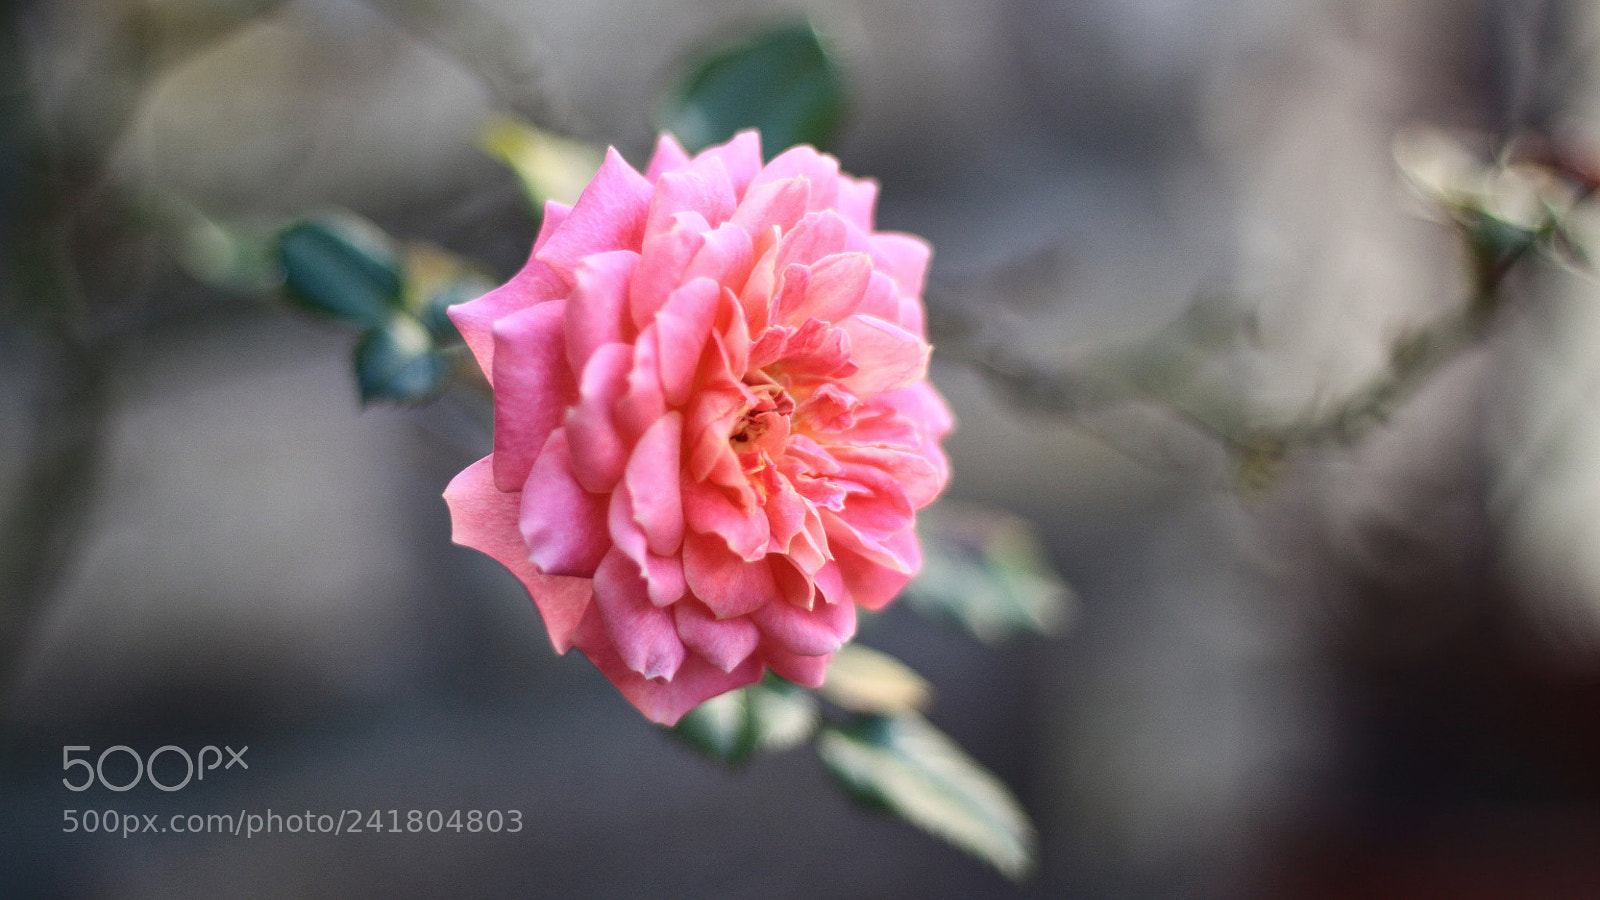 Canon EOS 50D sample photo. Garden of roses photography